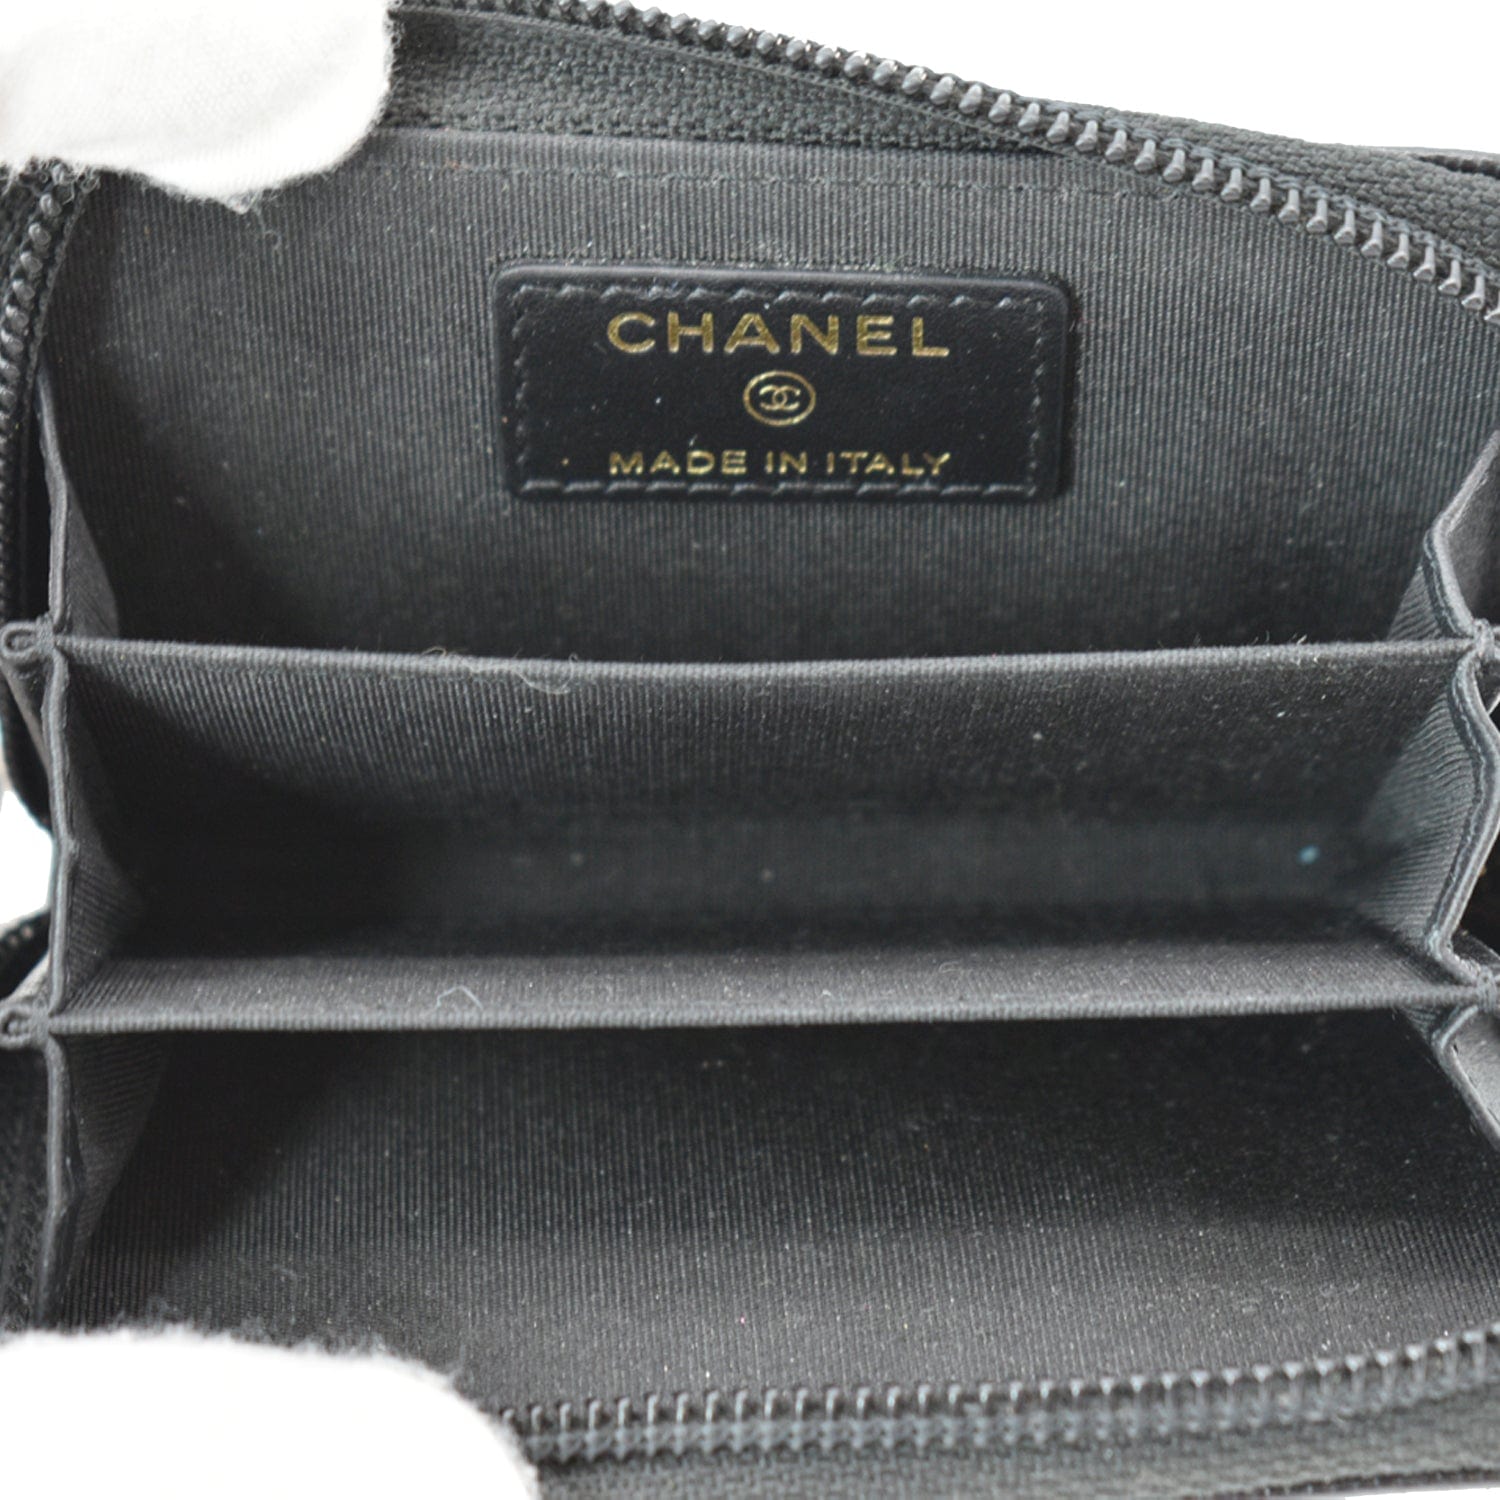 Black Caviar Boy Compact Wallet – Opulent Habits